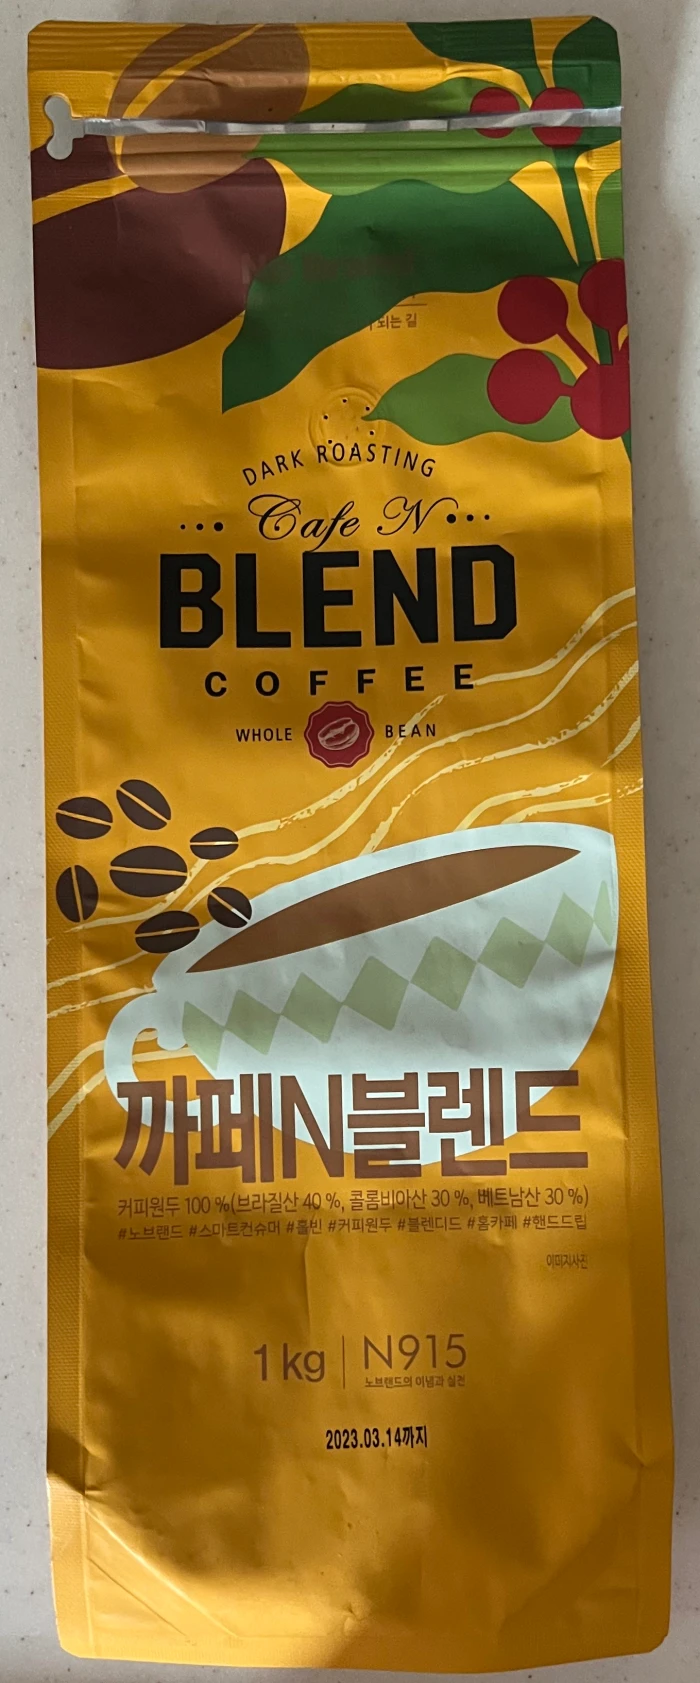 노브랜드 커피 홀빈원두 제품인 까페N블렌드의 뒷면 사진